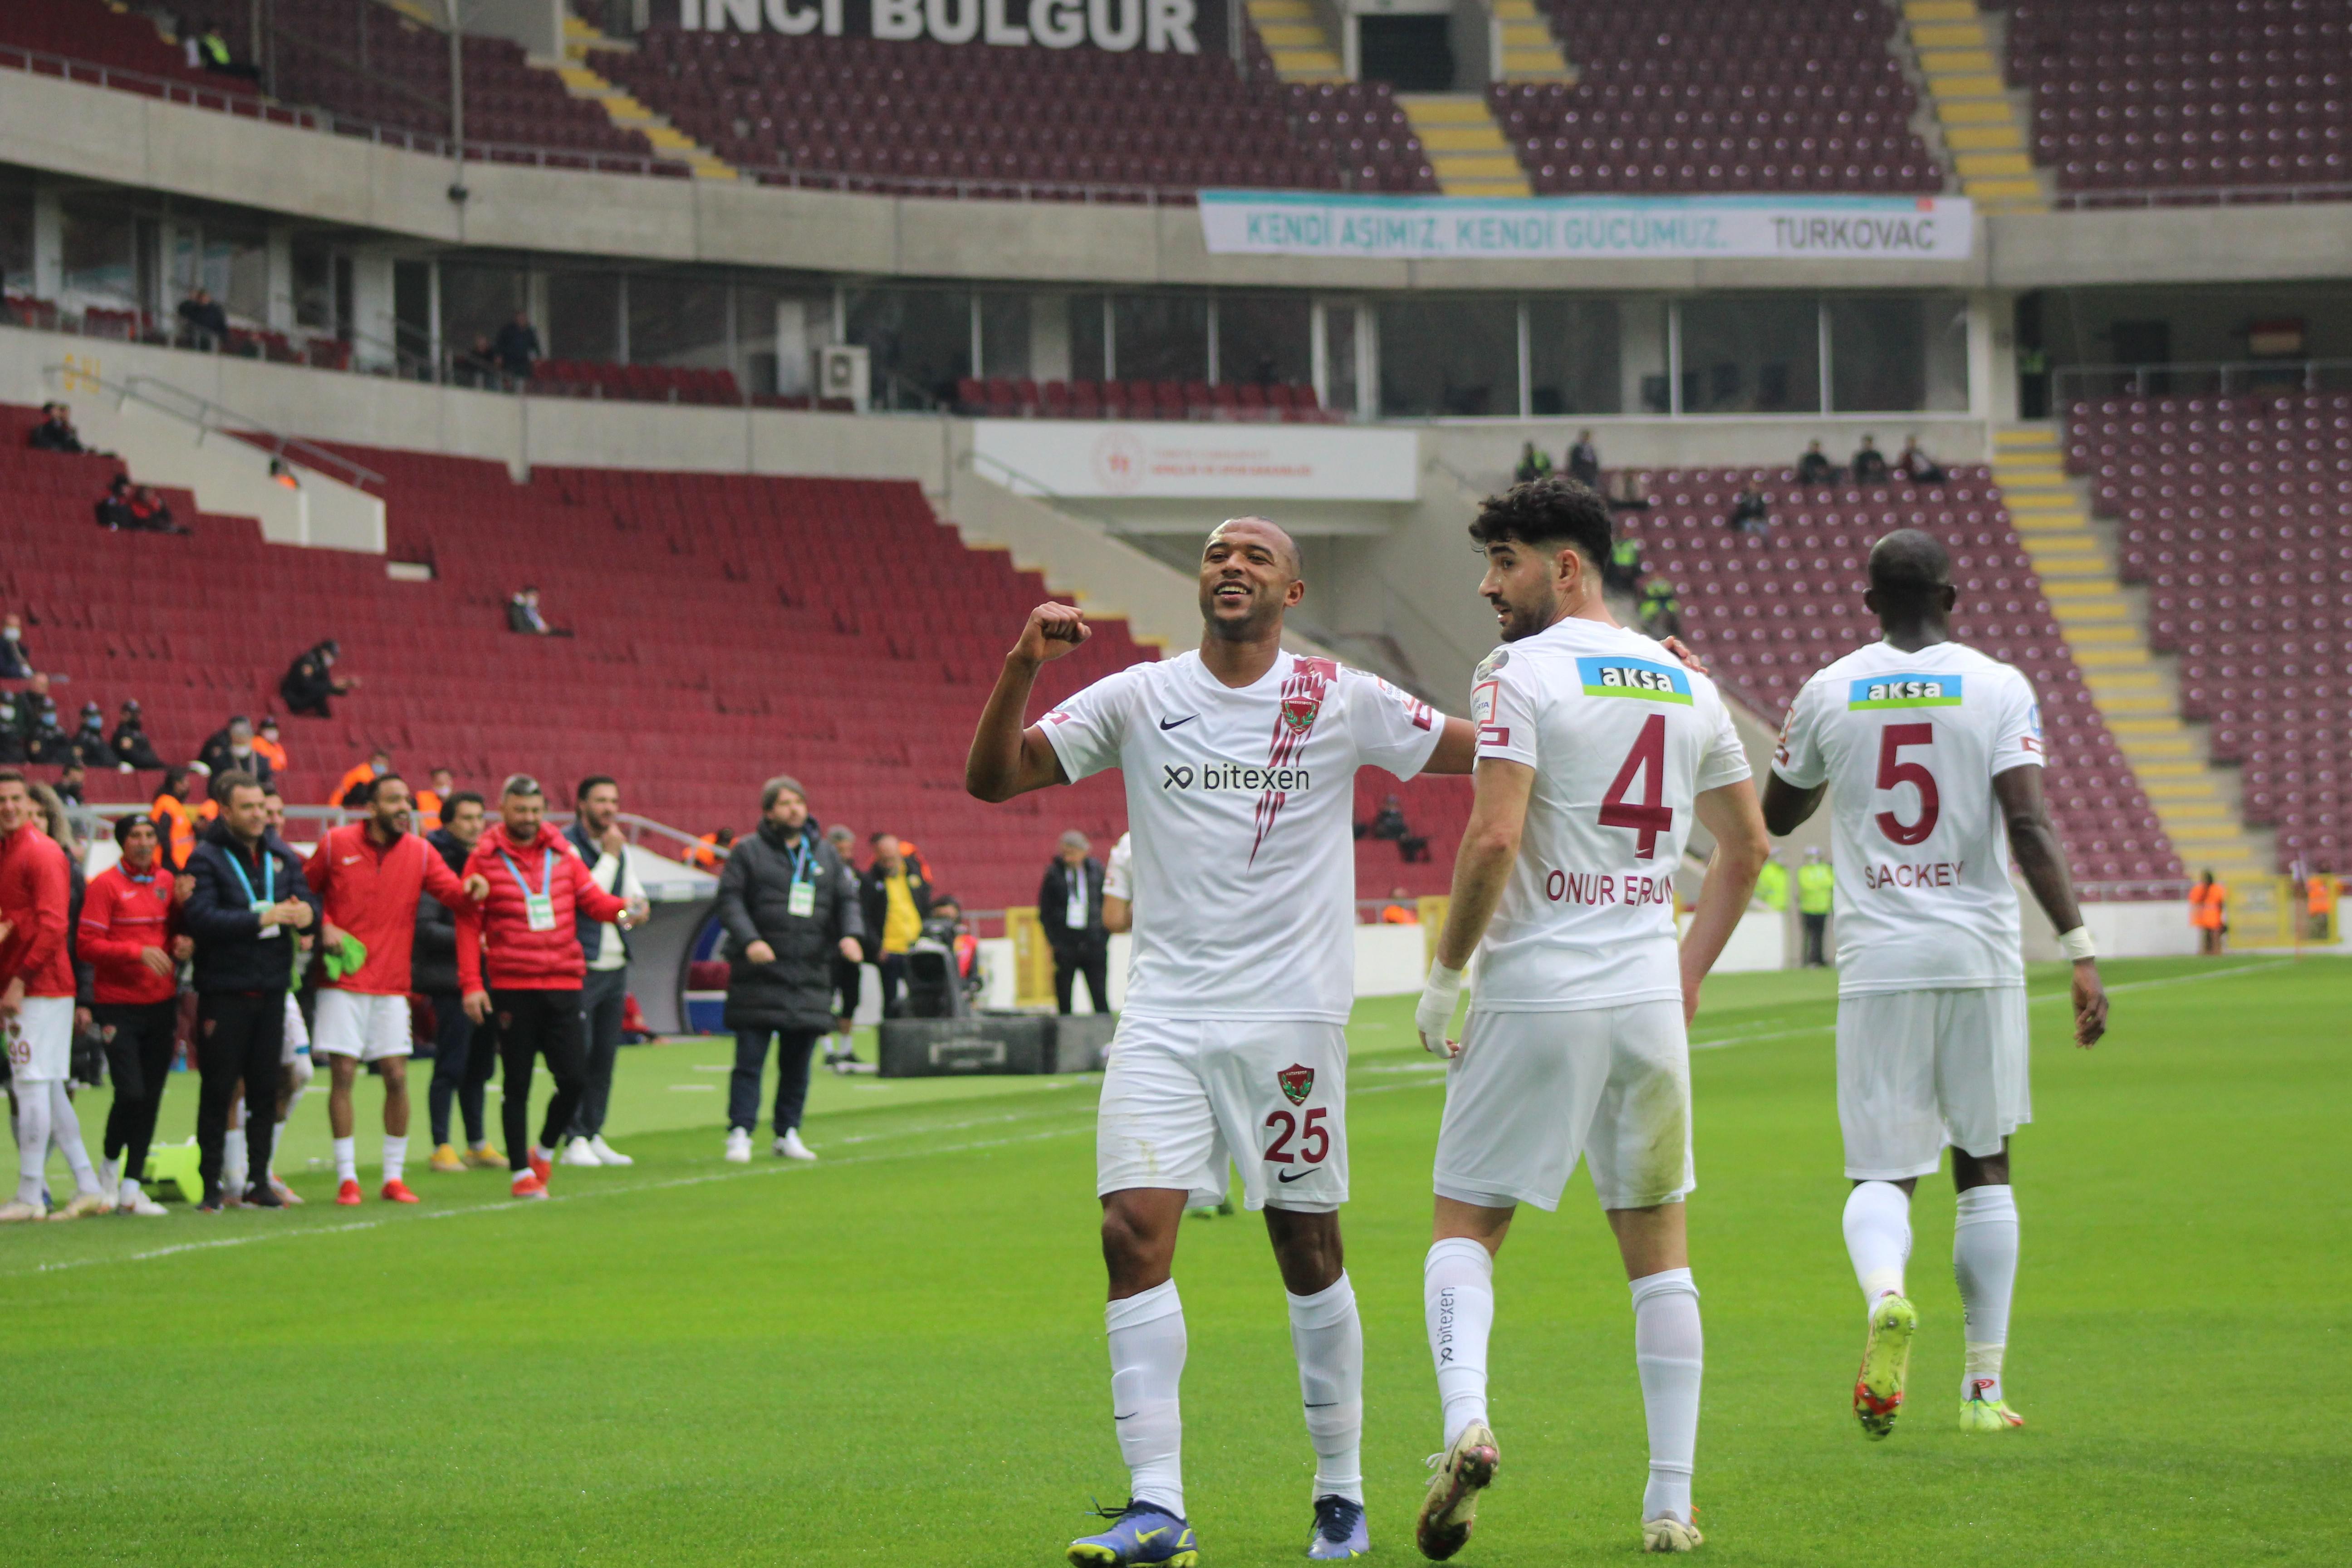 ÖZET | Hatayspor - ÖK Yeni Malatyaspor maç sonucu: 5-2